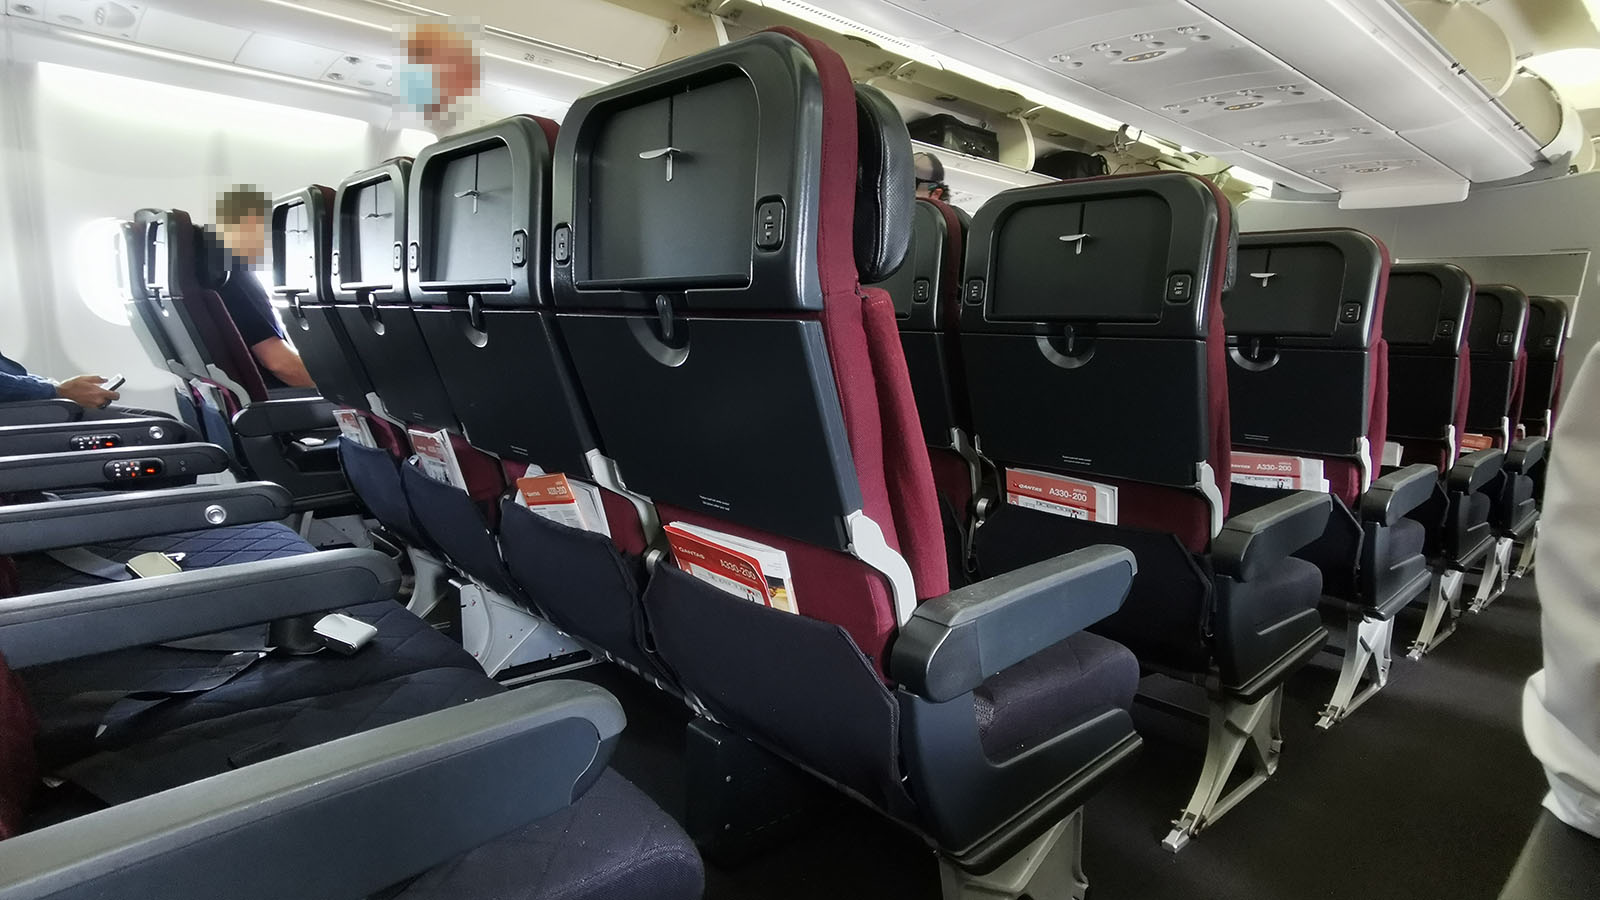 Qantas Airbus A330 Economy